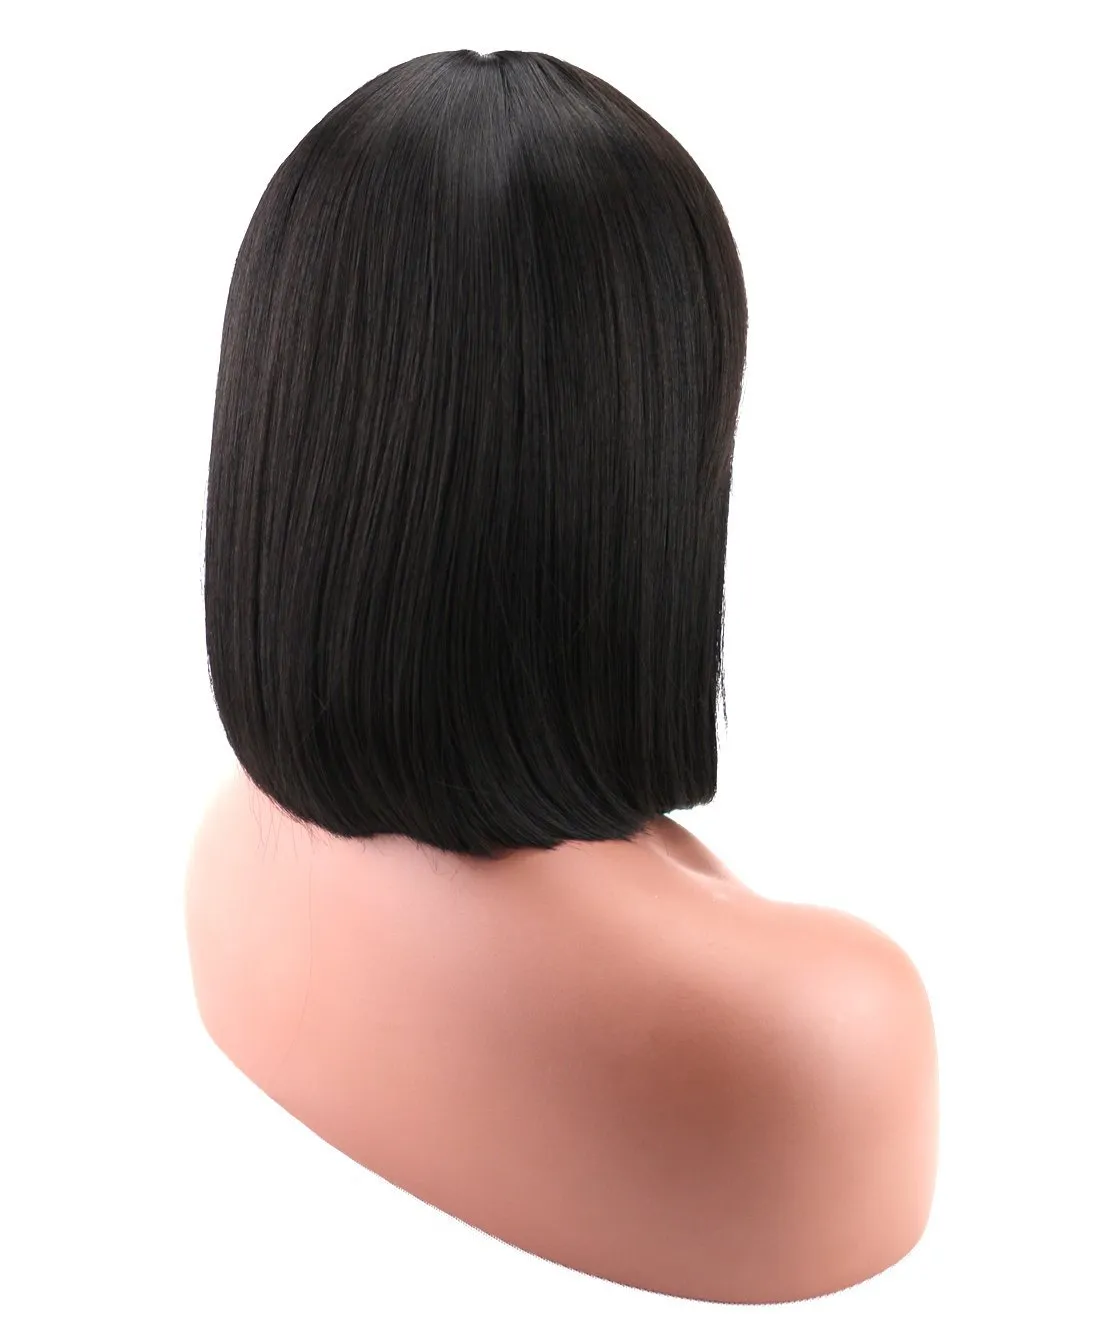 Kısa bob dantel peruk patlamaları brezilya bakire saç düz dantel ön insan saç perukları siyah kadınlar için İsviçre dantel ön peruklar g6351247